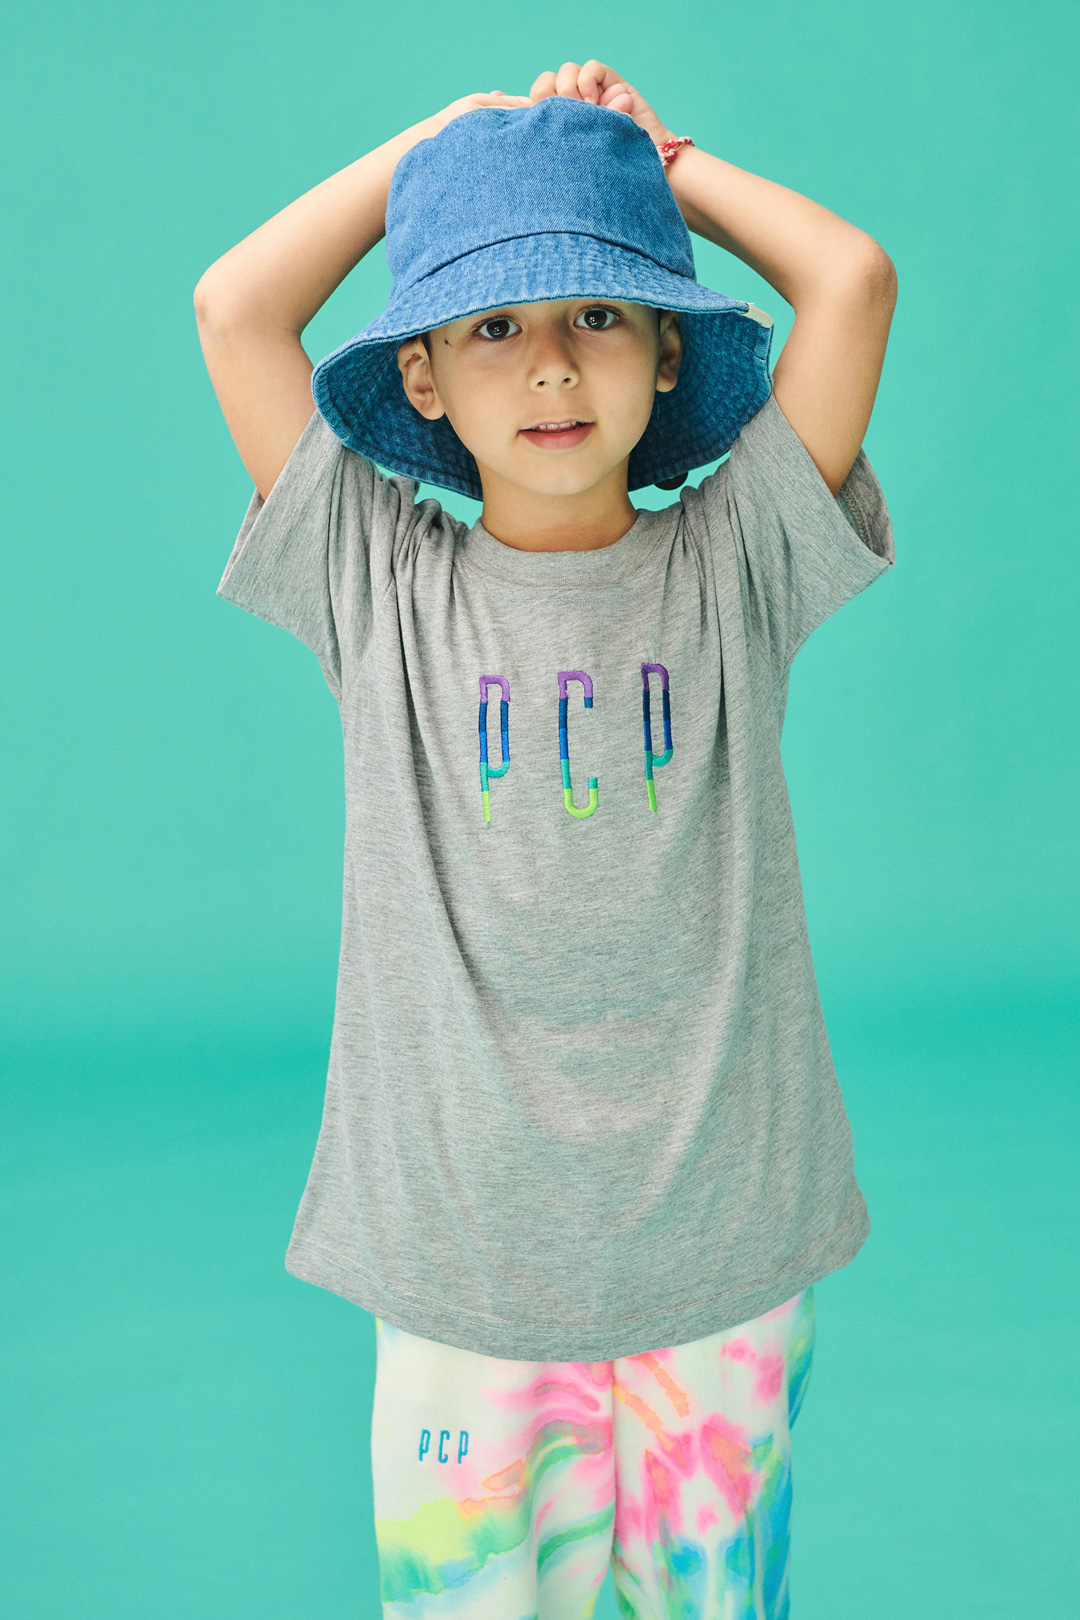 PCP Παιδικό Βιολογικό Harmony Μπλουζάκι για Αγόρι Μπλε